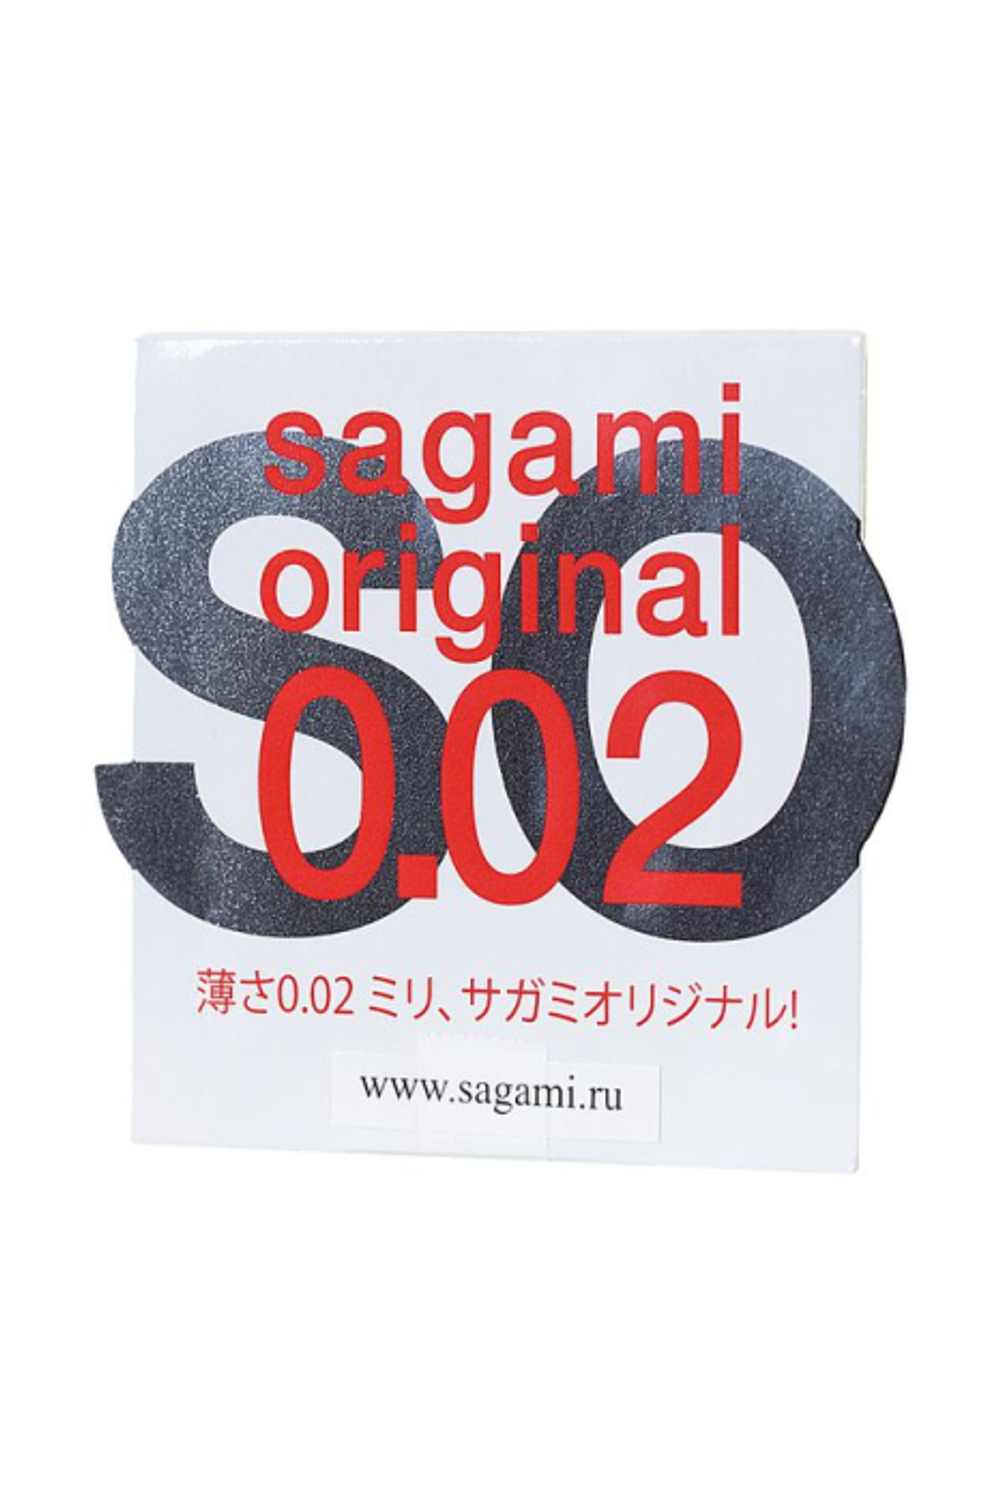 SAGAMI Original 002 Полиуретановые презервативы 0,02 мм 1шт